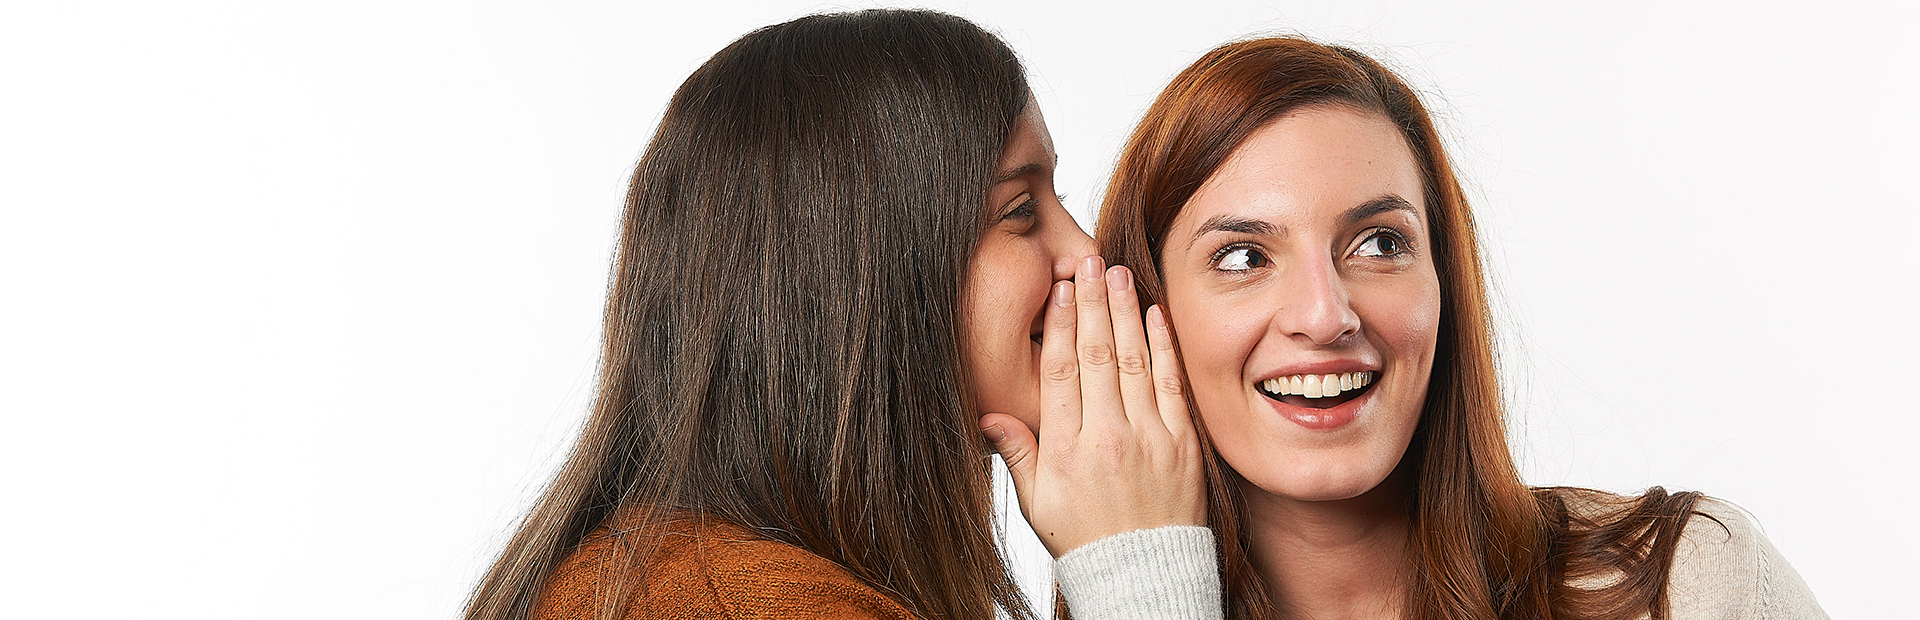 Frauen die lachen und Geheimnisse teilen